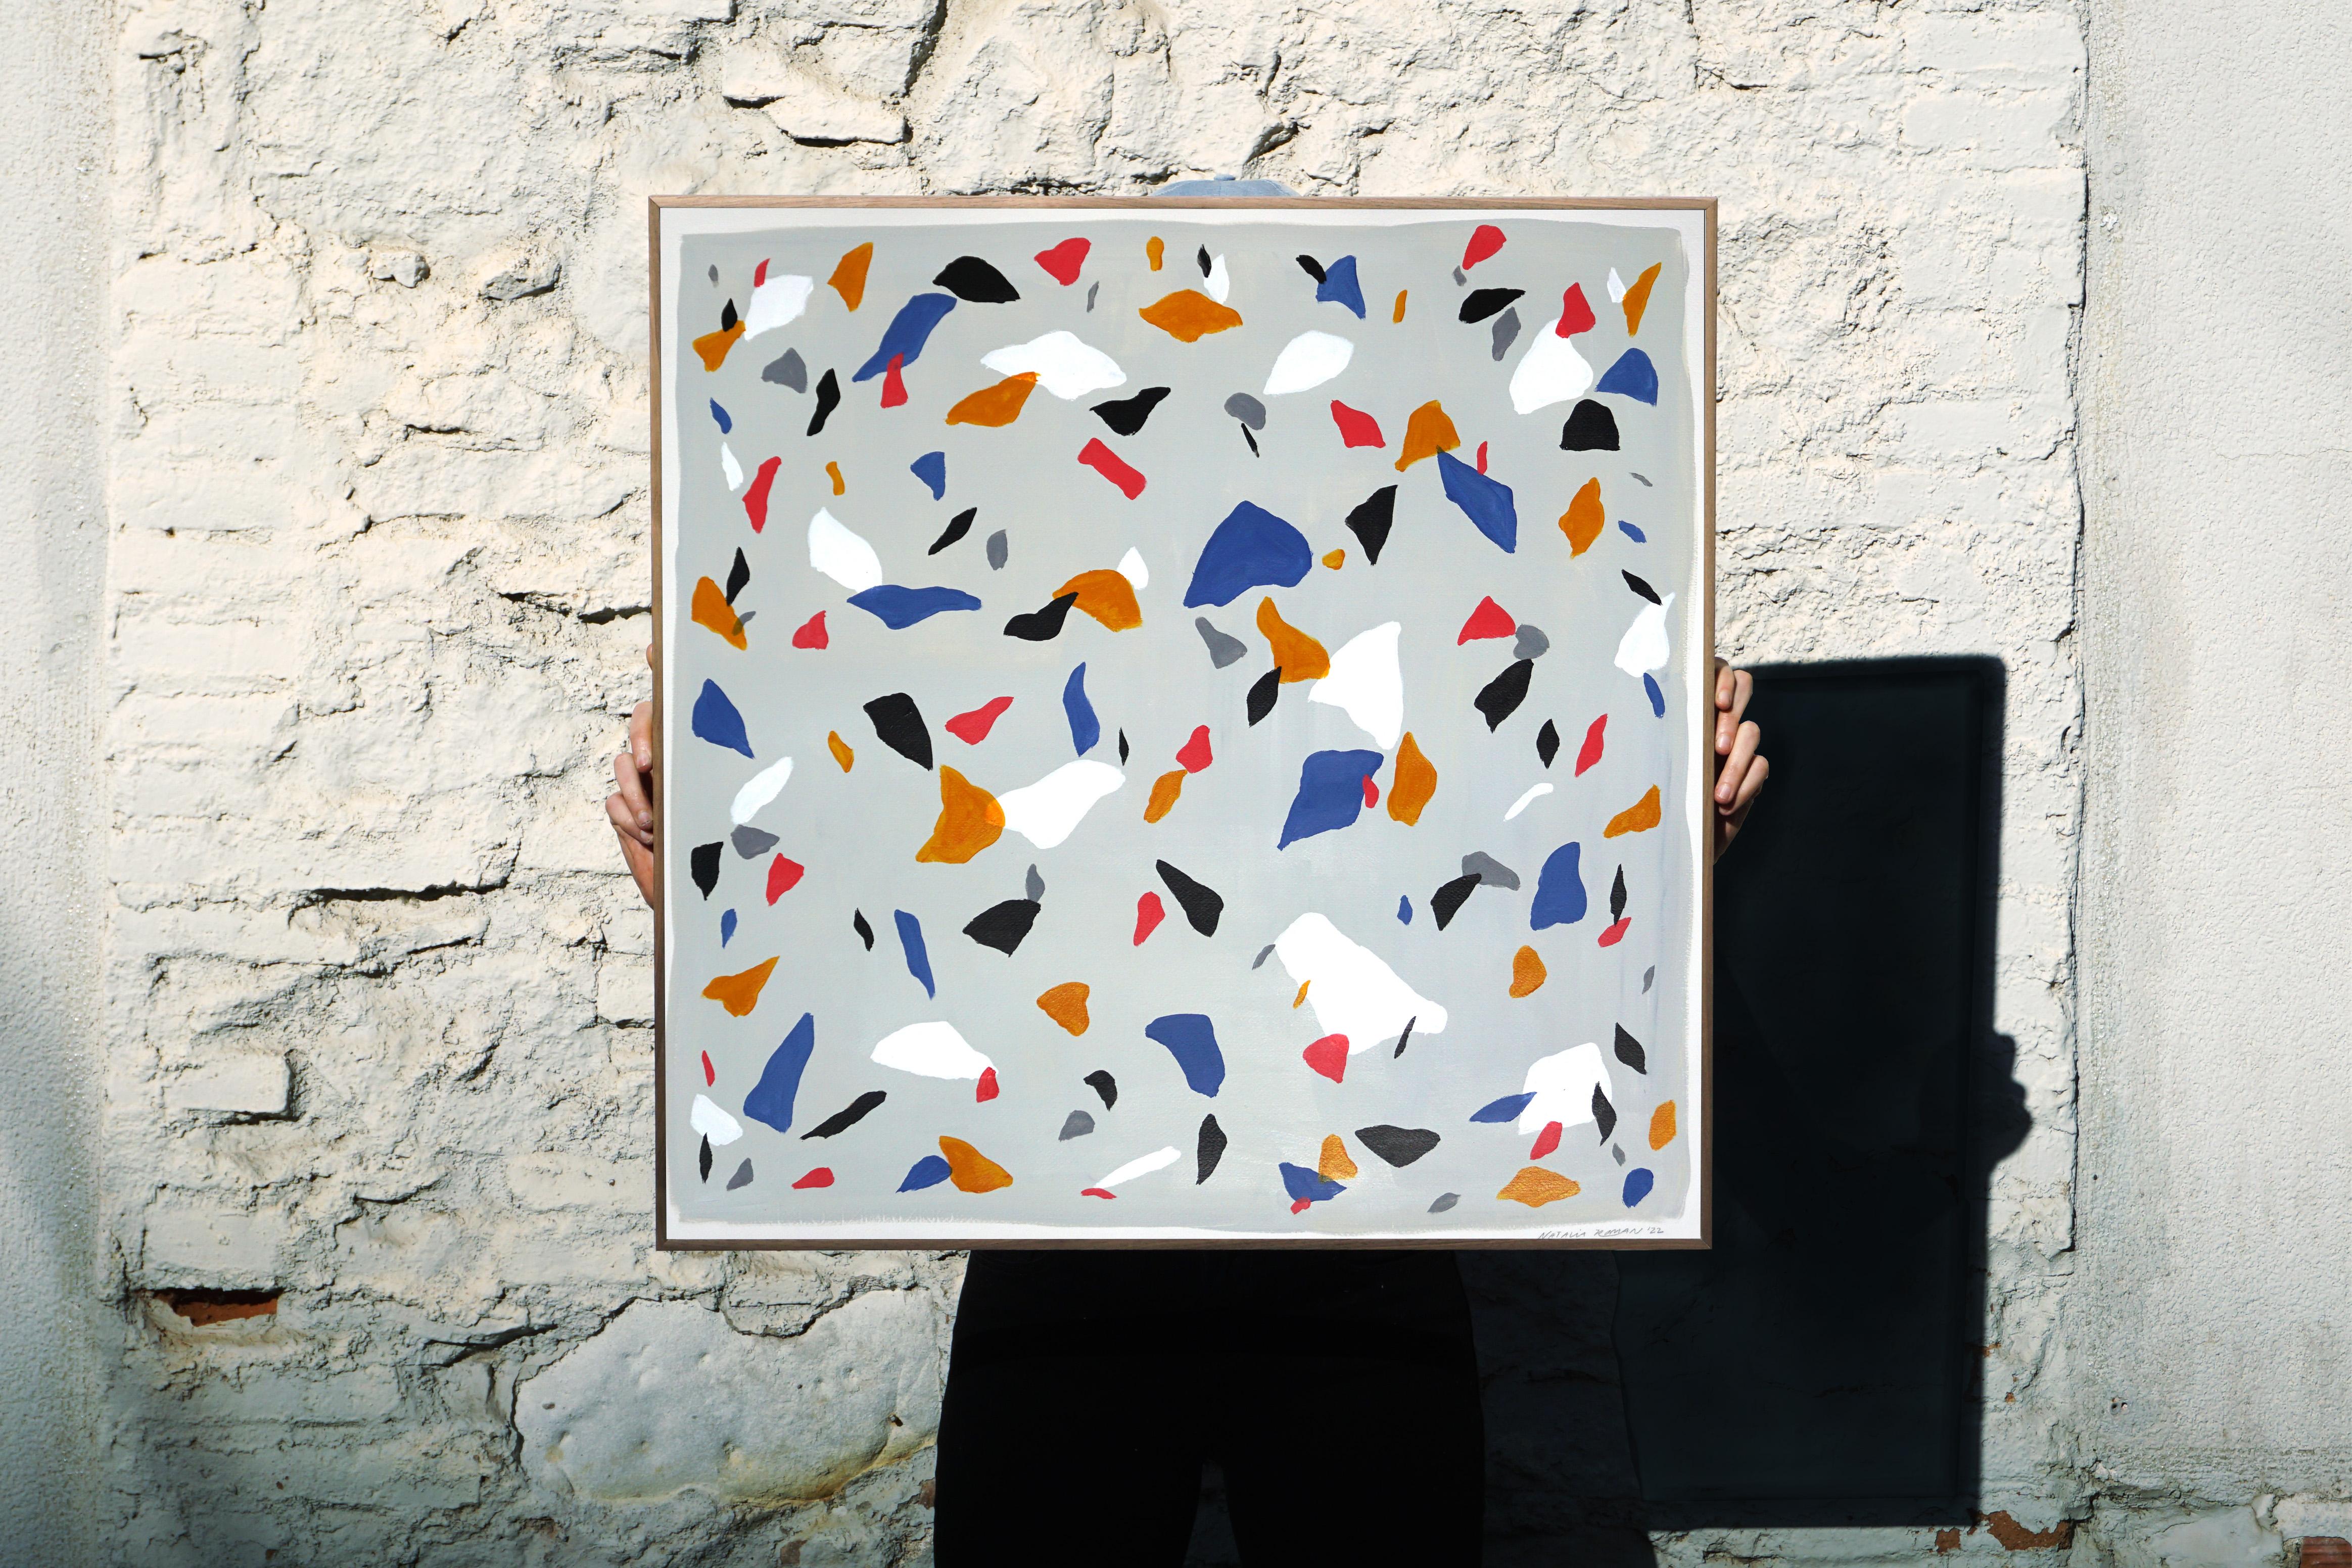 Couleurs primaires sur terrazzo gris, peinture carrée sur papier d'aquarelle, minimaliste - Painting de Natalia Roman